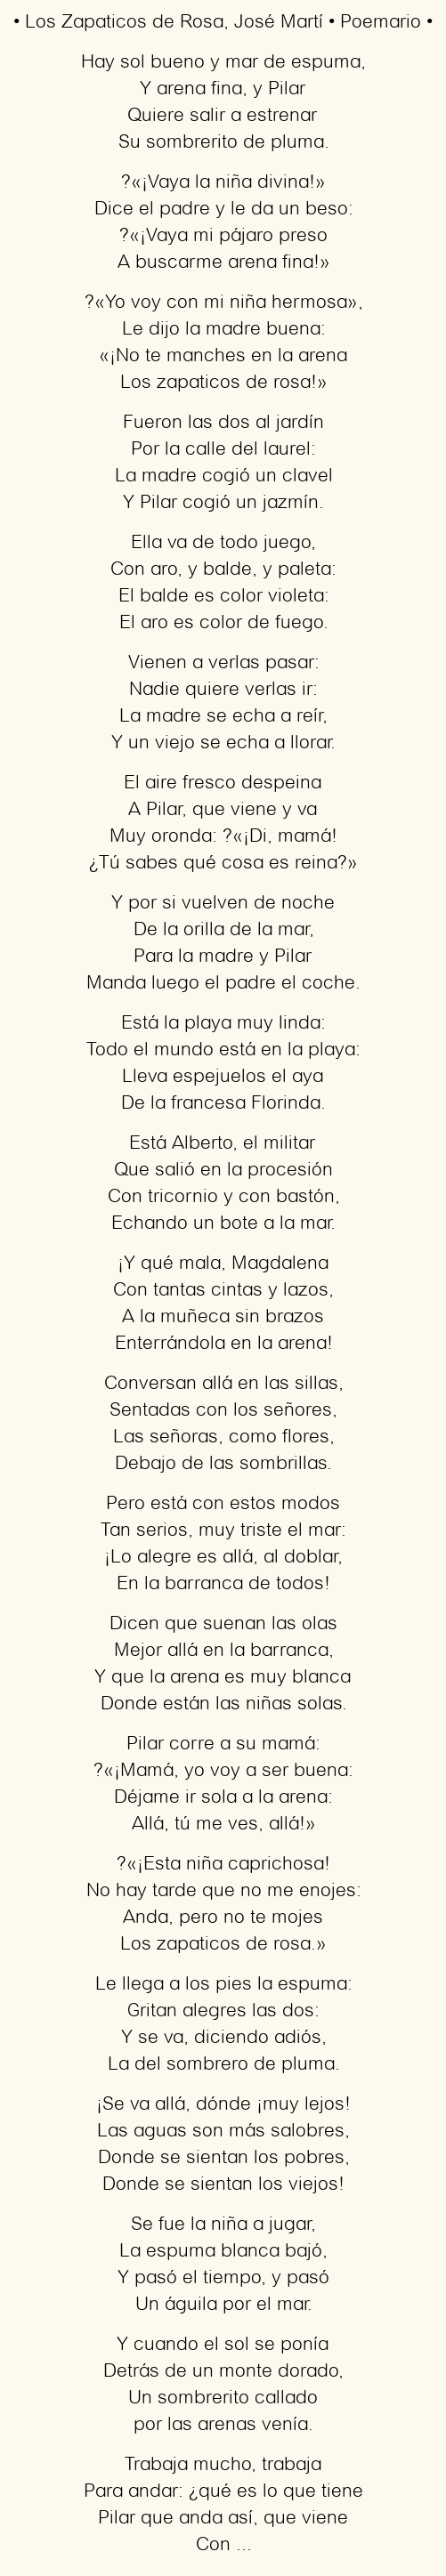 Los Zapaticos de Rosa, por José Martí